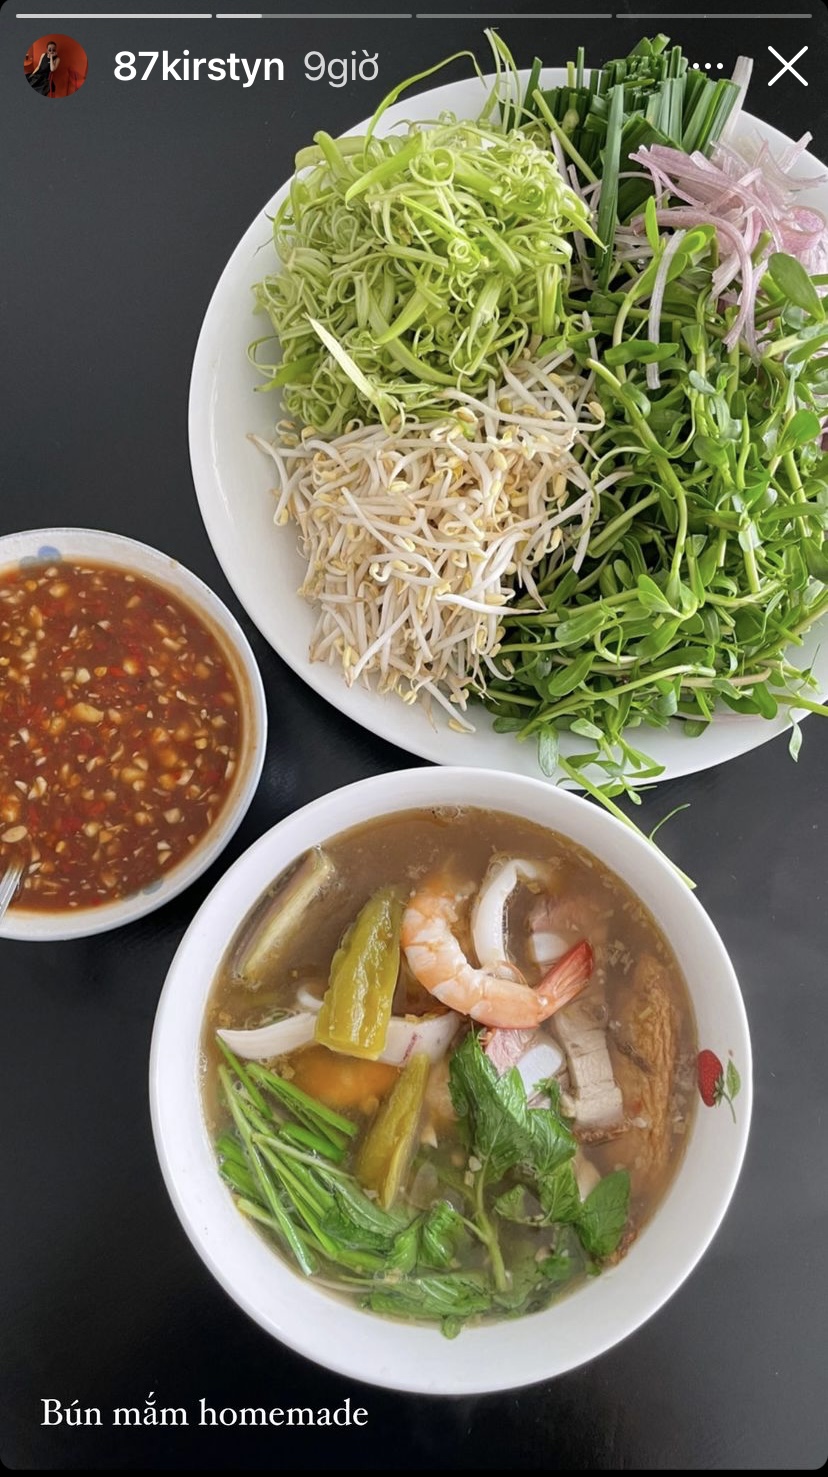 Dù là bát bún mắm homemade nhưng Yến Trang - Yến Nhi vẫn chuẩn bị rau sống và nước chấm ăn kèm đầy đủ không kém ngoài tiệm.